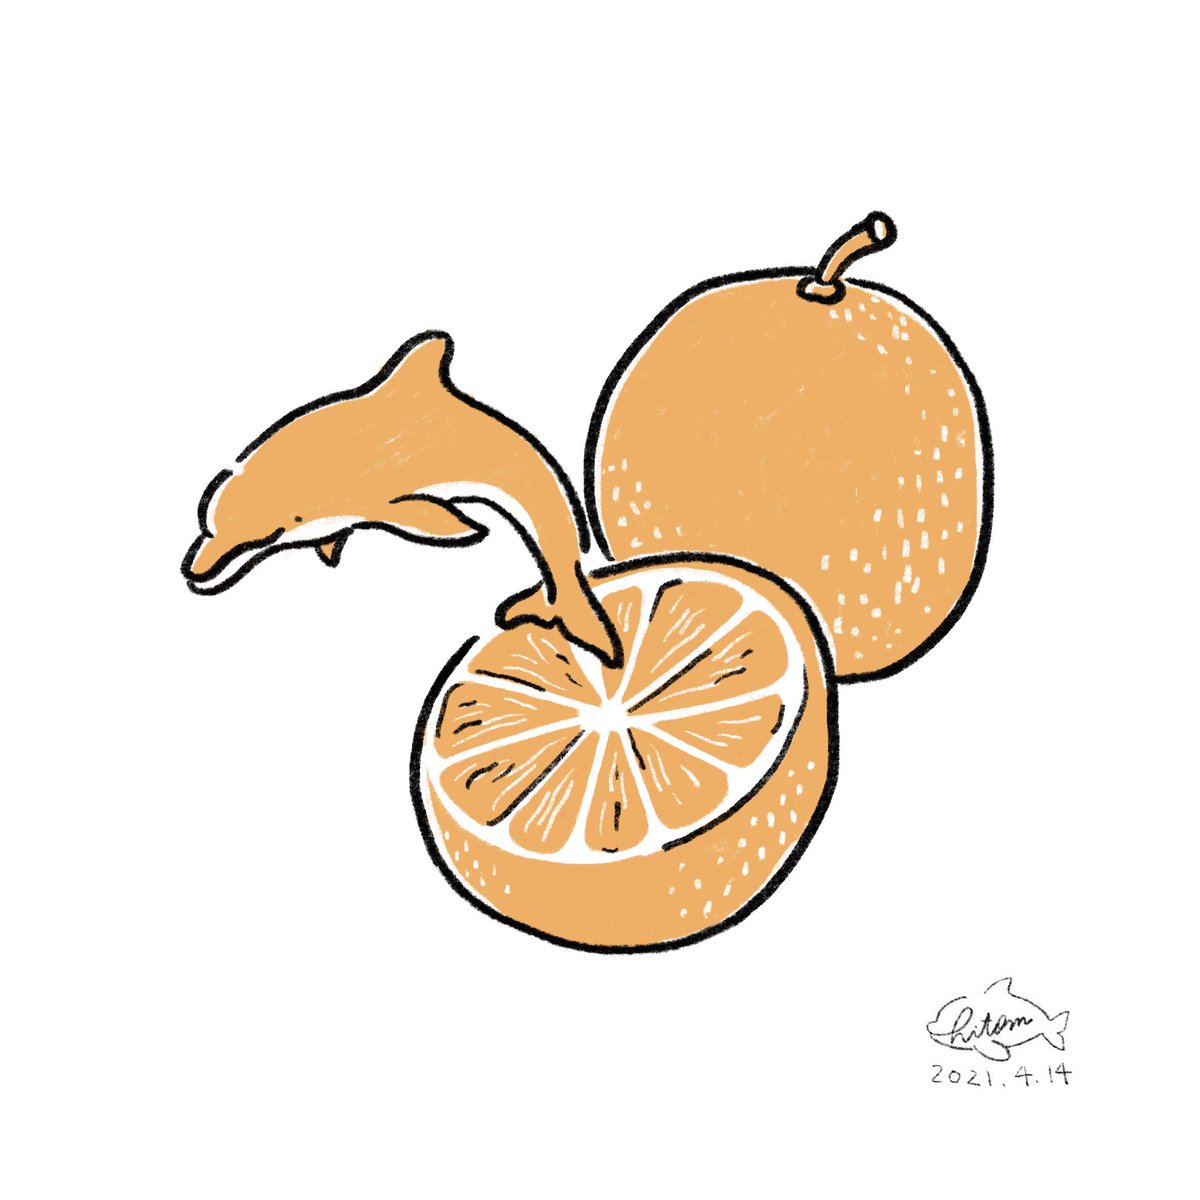 あらたひとむ 4月14日はオレンジデー バレンタインデー ホワイトデーと続きオレンジデーだそう ちなみにオレンジ色の イルカが夢に出てきたら健康運アップの兆し 毎日元気いっぱいに過ごせるでしょう あらたひとむ 4月14日 今日は何の日 Whale